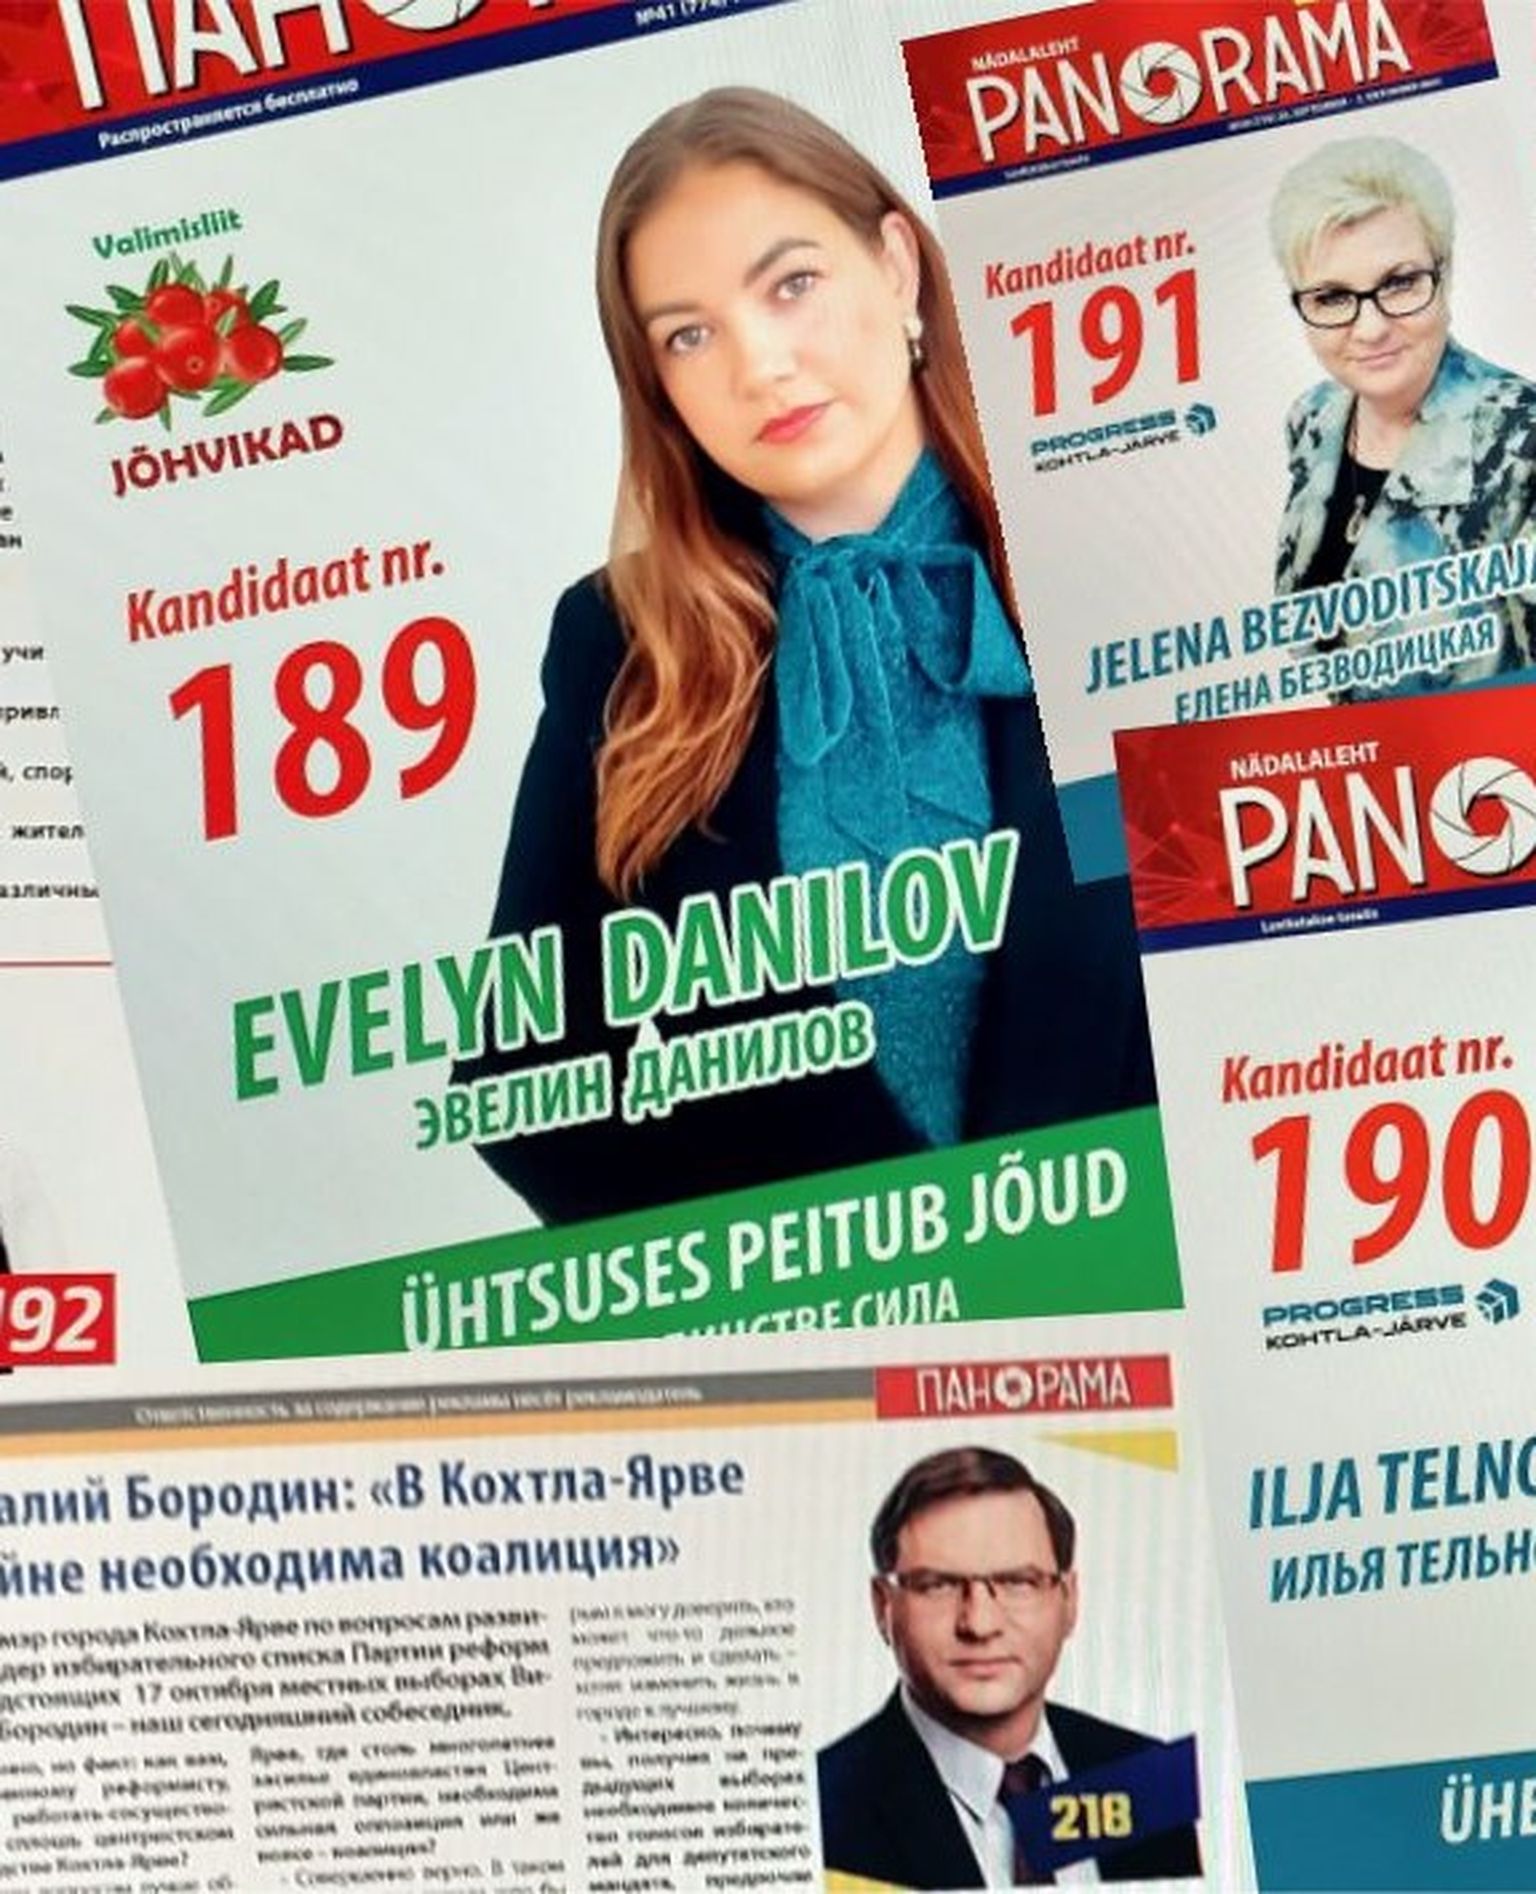 Избирательный союз "Jõhvikad" должен вернуть фирме "N&V", издателю рекламной газеты "Панорама", запрещенное пожертвование в размере 6903 евро, но избирательный союз намерен оспорить это предписание.